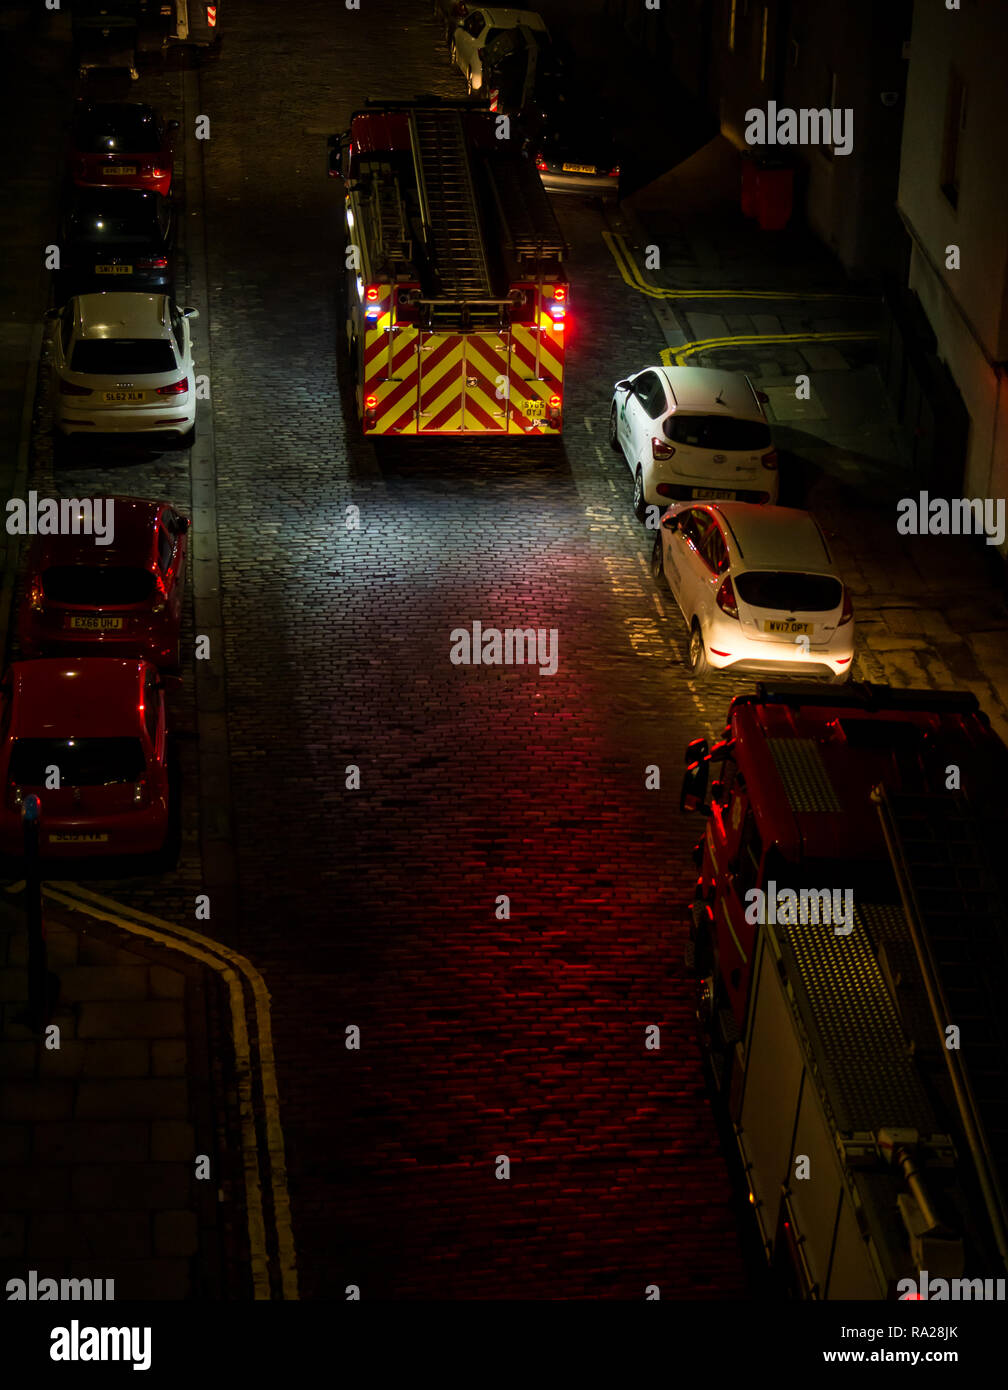 Löschfahrzeuge mit Blau blinkende Lichter in der Nacht die Teilnahme an Feueralarm, Leith, Edinburgh, Schottland, Großbritannien Stockfoto